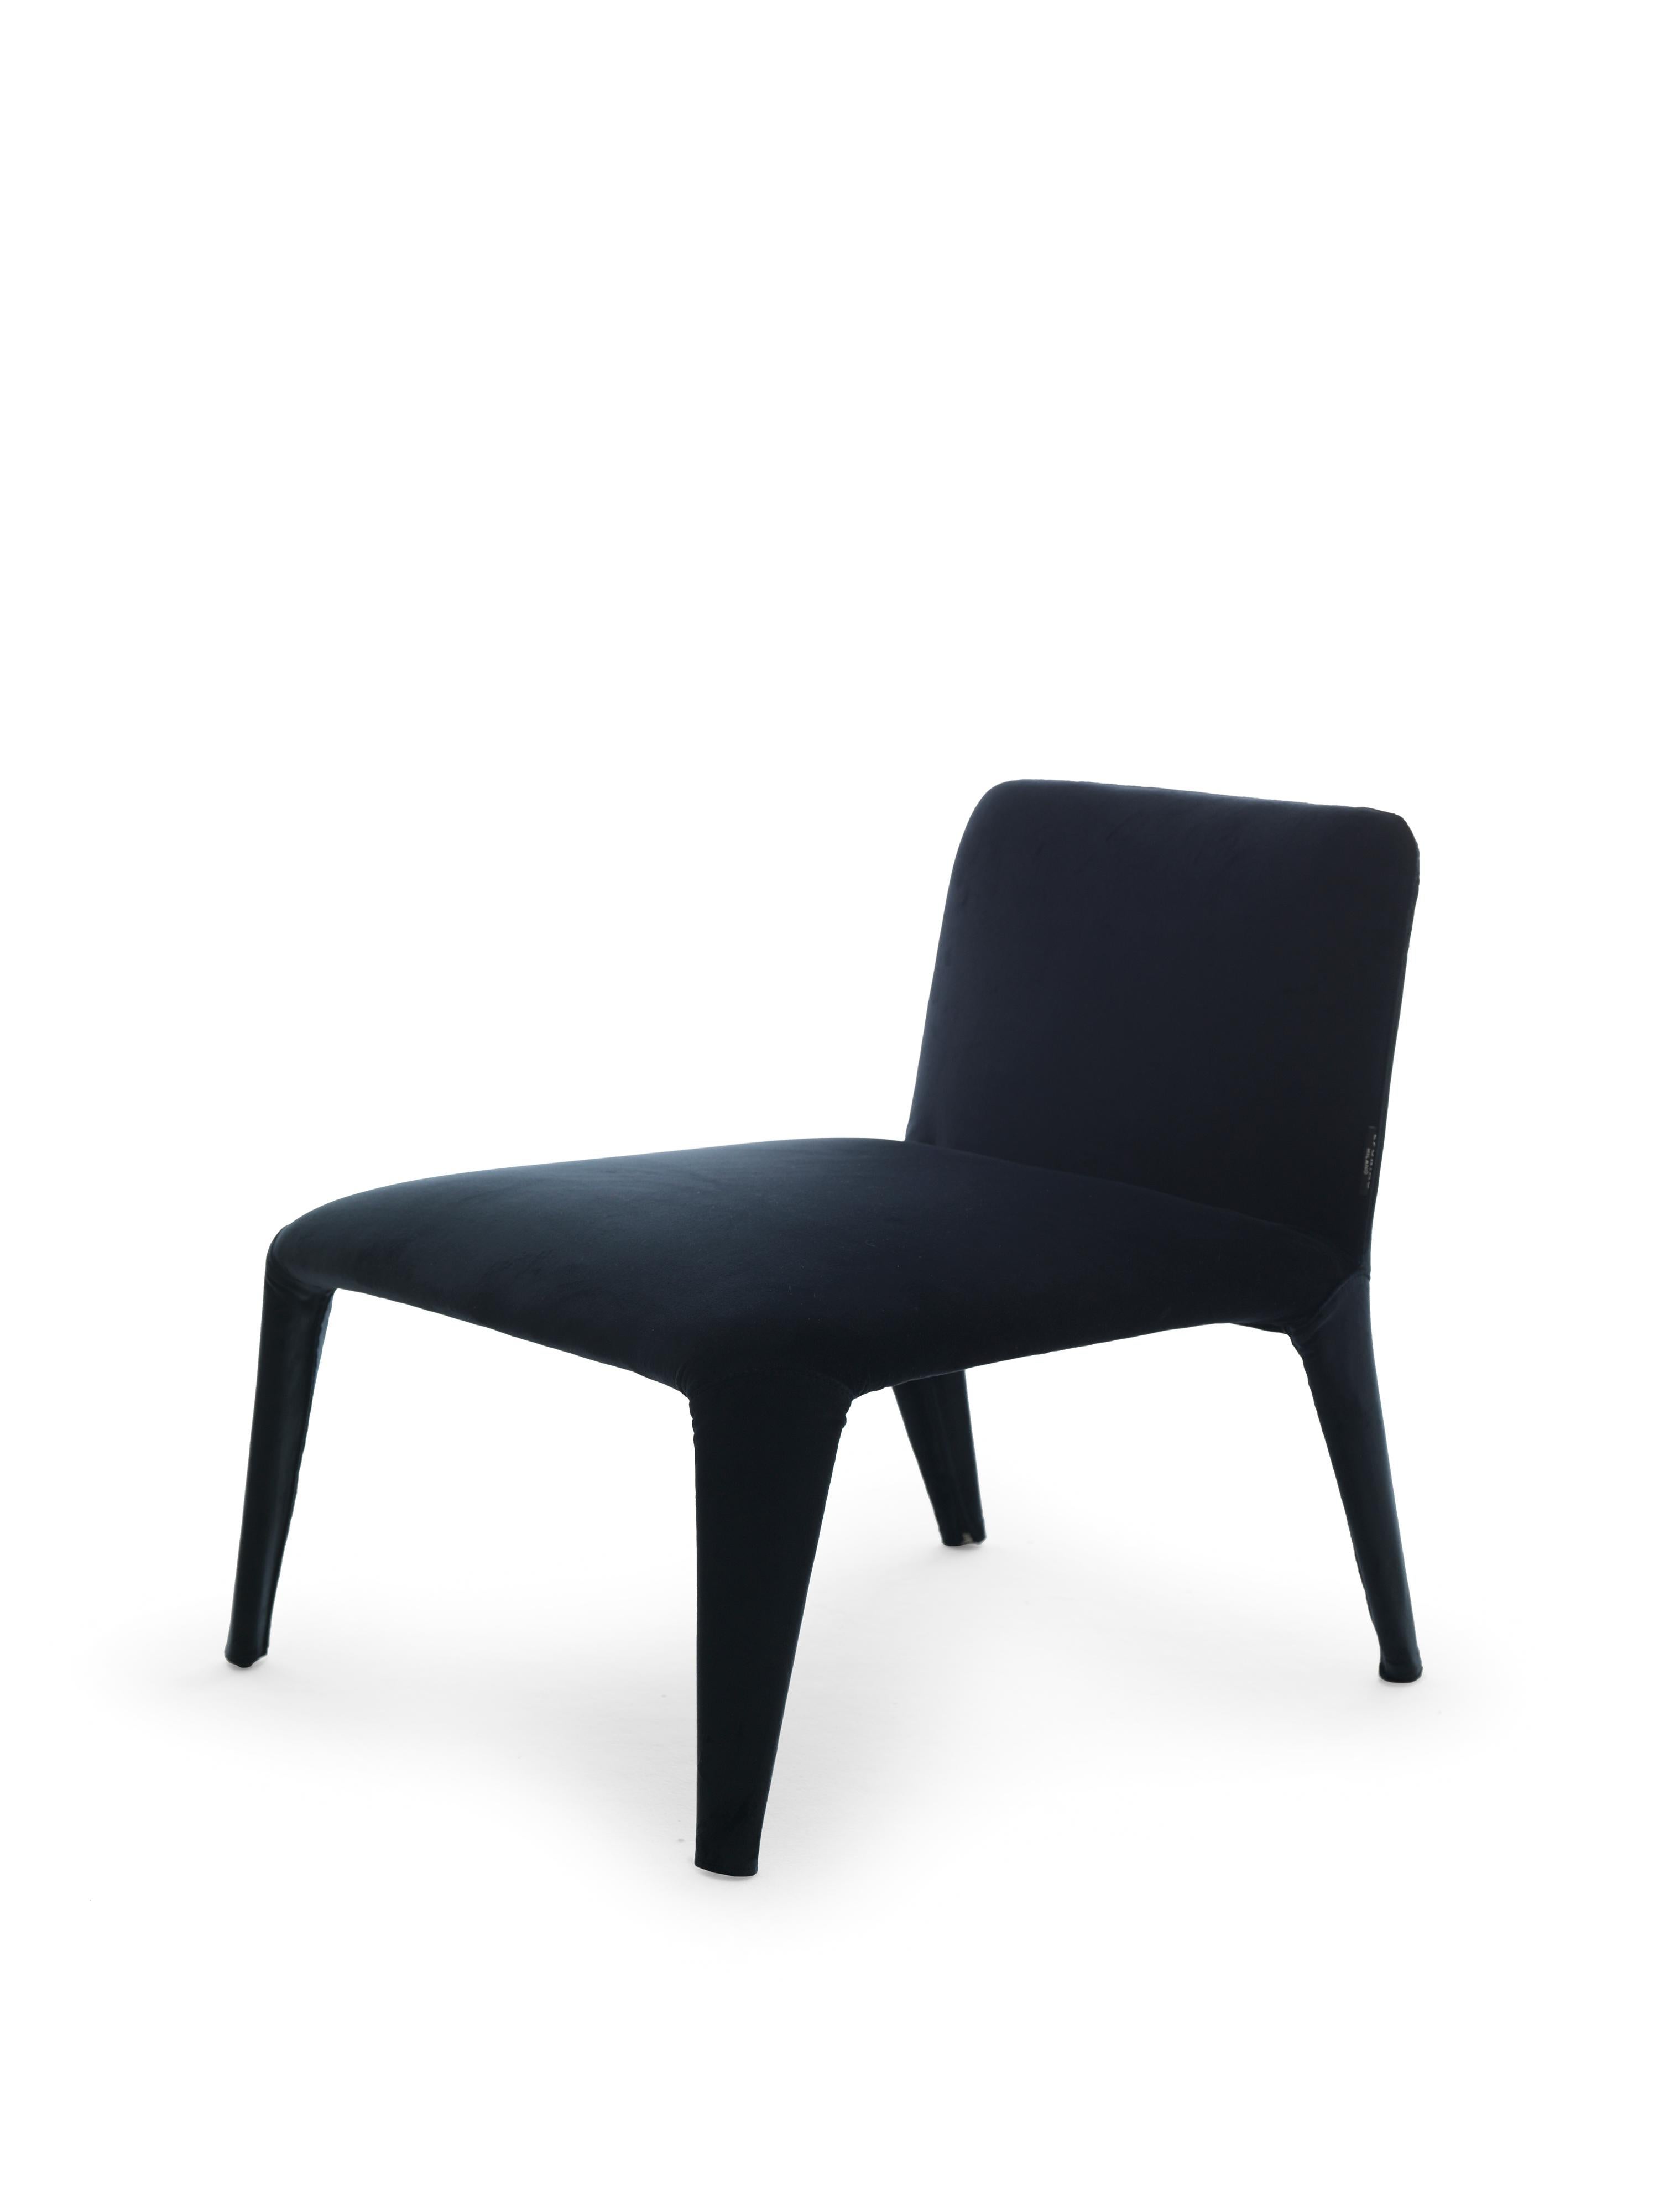 Nova est un fauteuil léger en textile, au look précieux, dont la housse en tissu est entièrement déhoussable. La structure interne est un squelette minimal de tubes métalliques qui soutient les sangles élastiques et les coussins en polyuréthane et